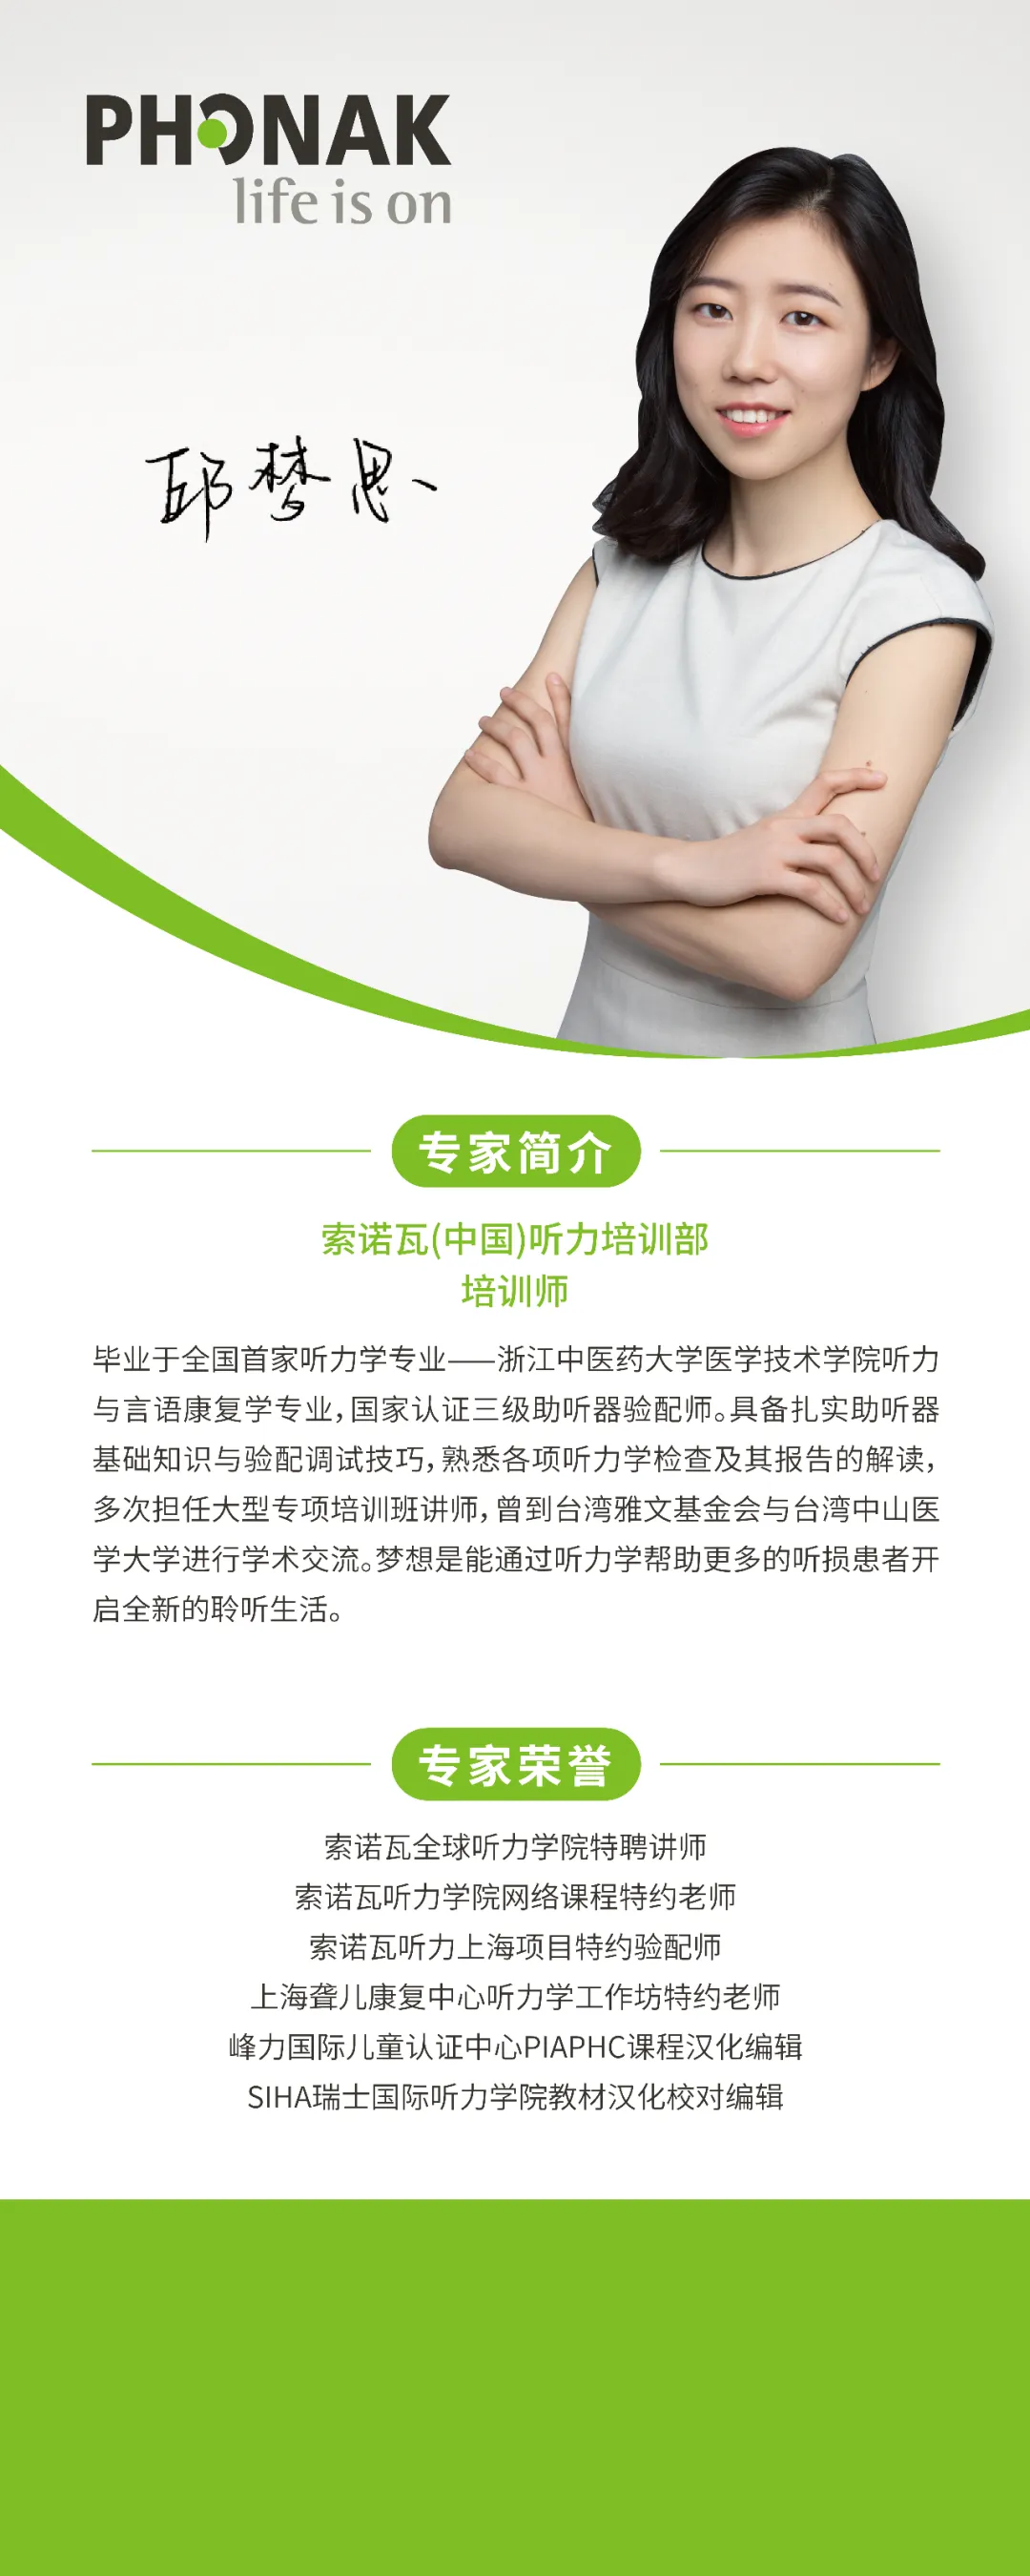 北京翔悦声康科技有限公司—专业助听器验配机构